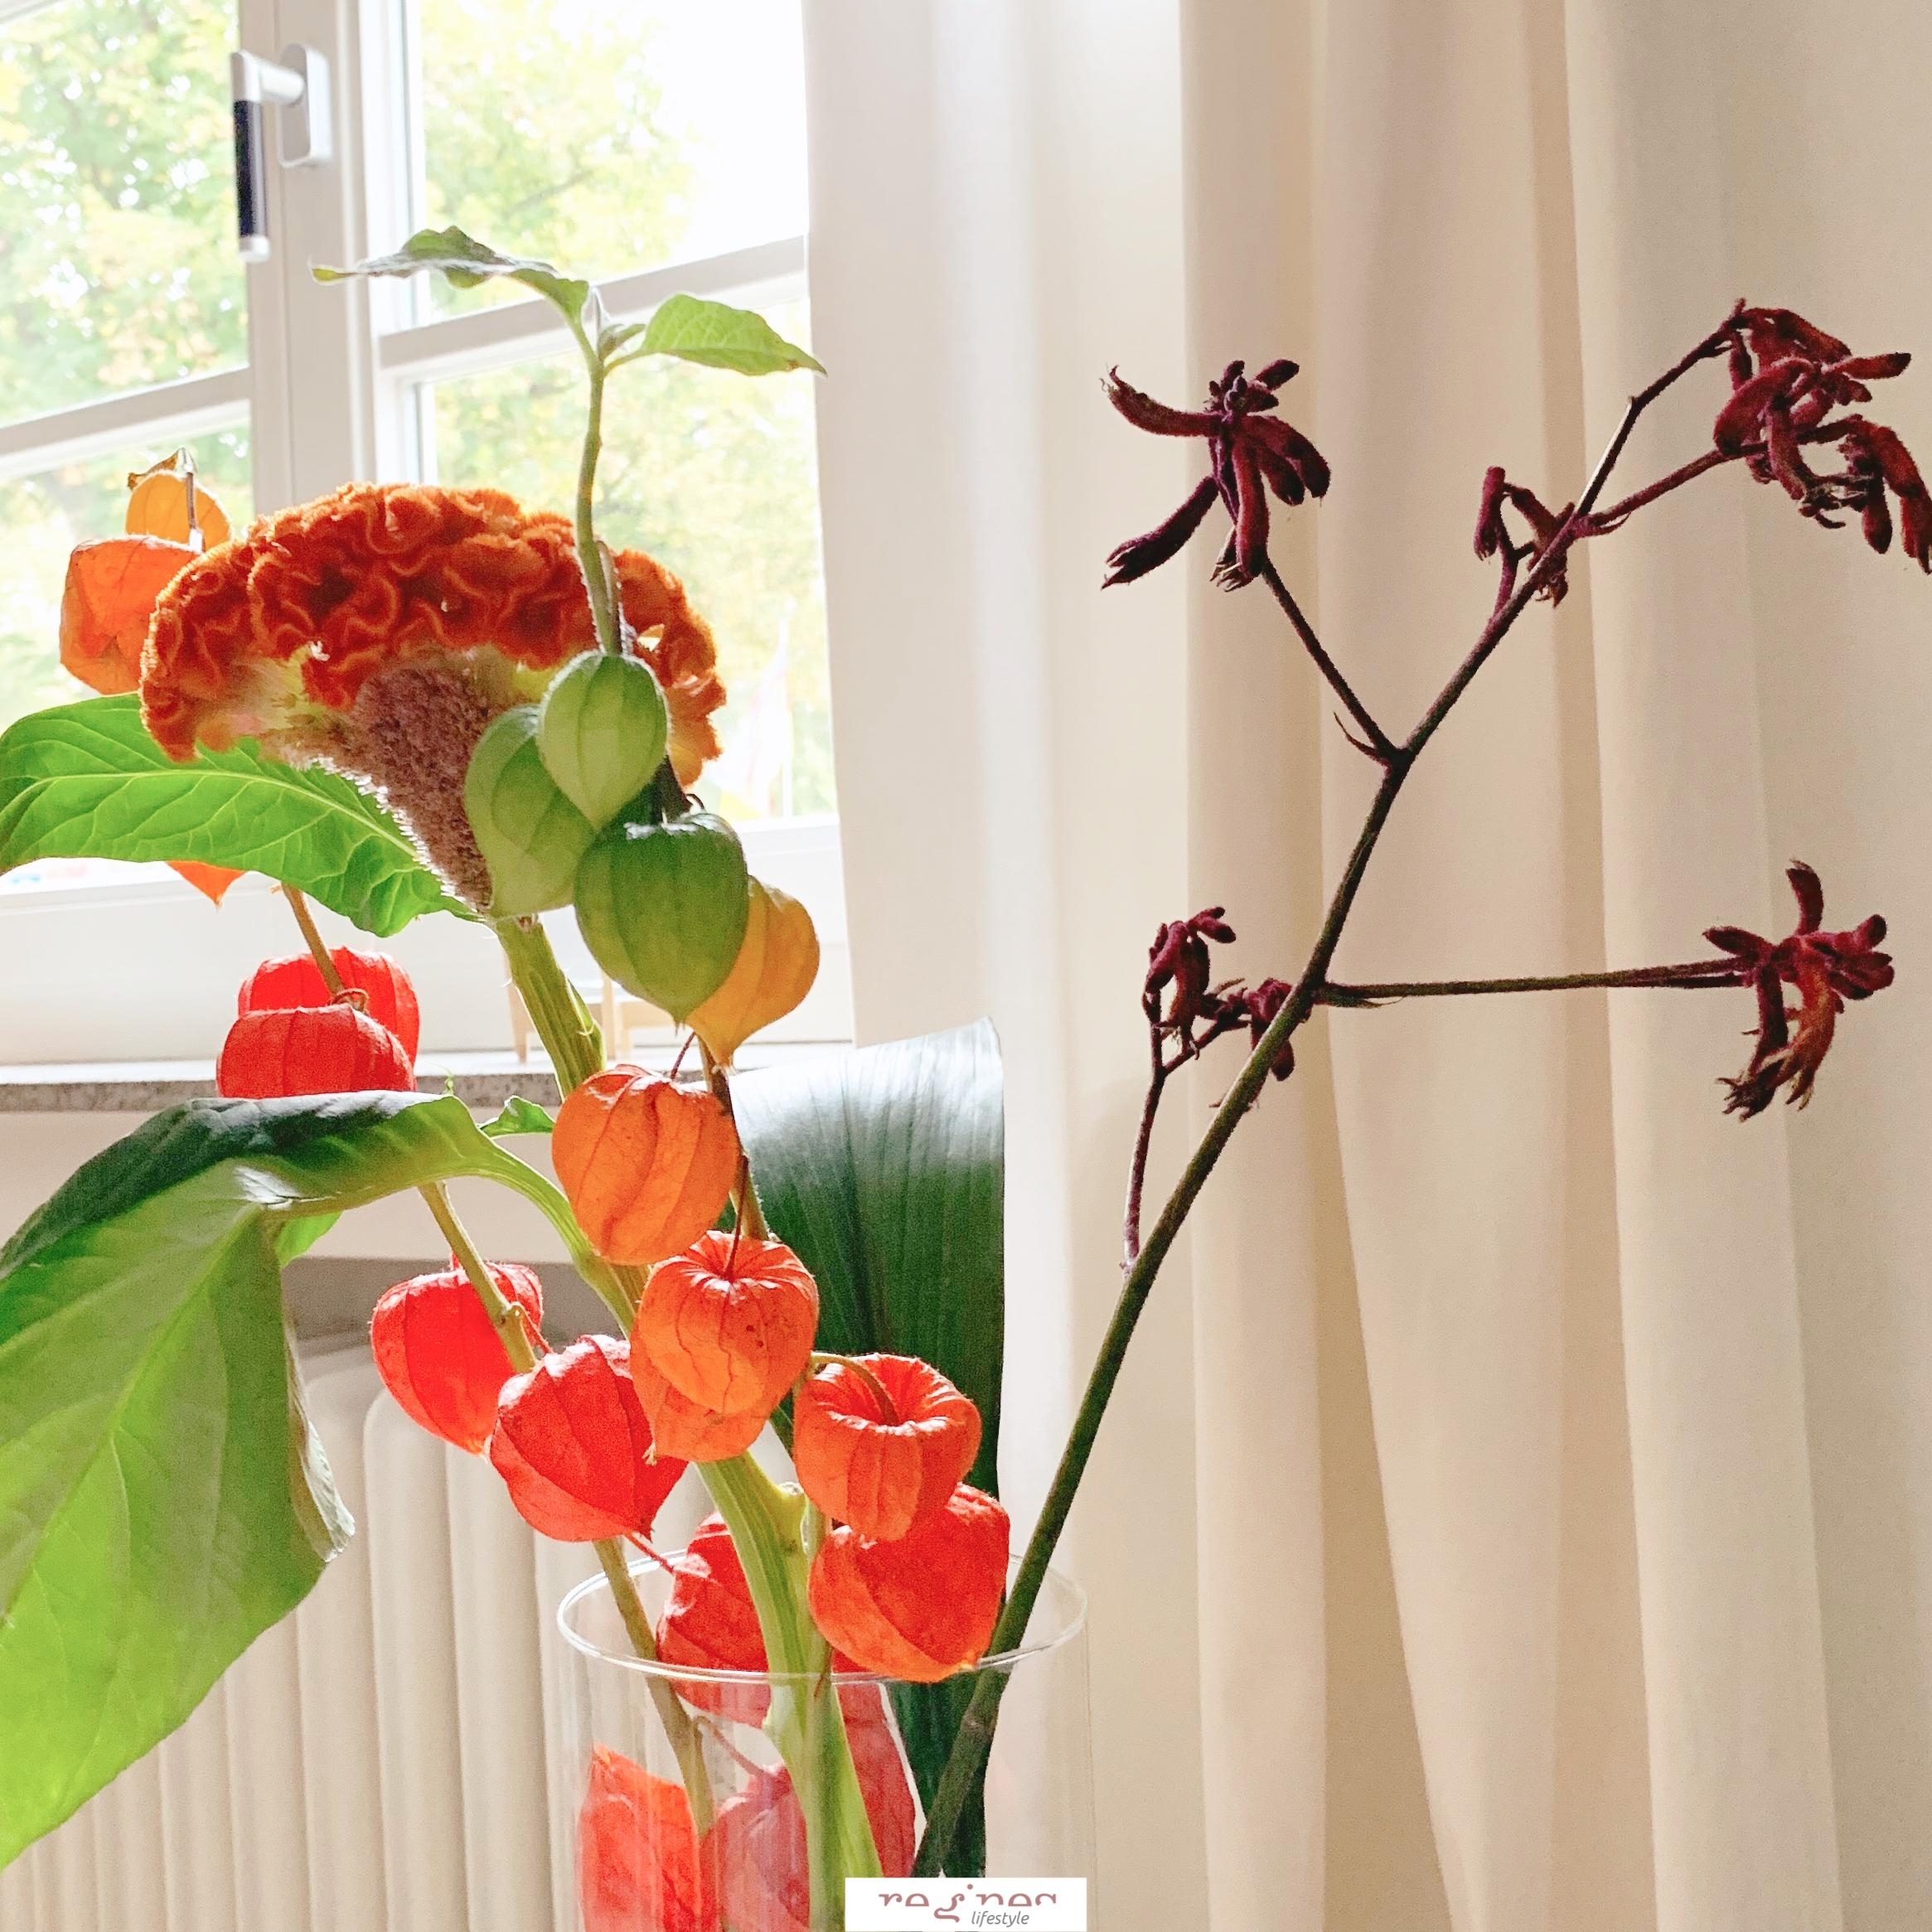 Herbstblumendekoration

#zuhause #dekoration #homedecor #genießen #deko #couchstyle #loftlife